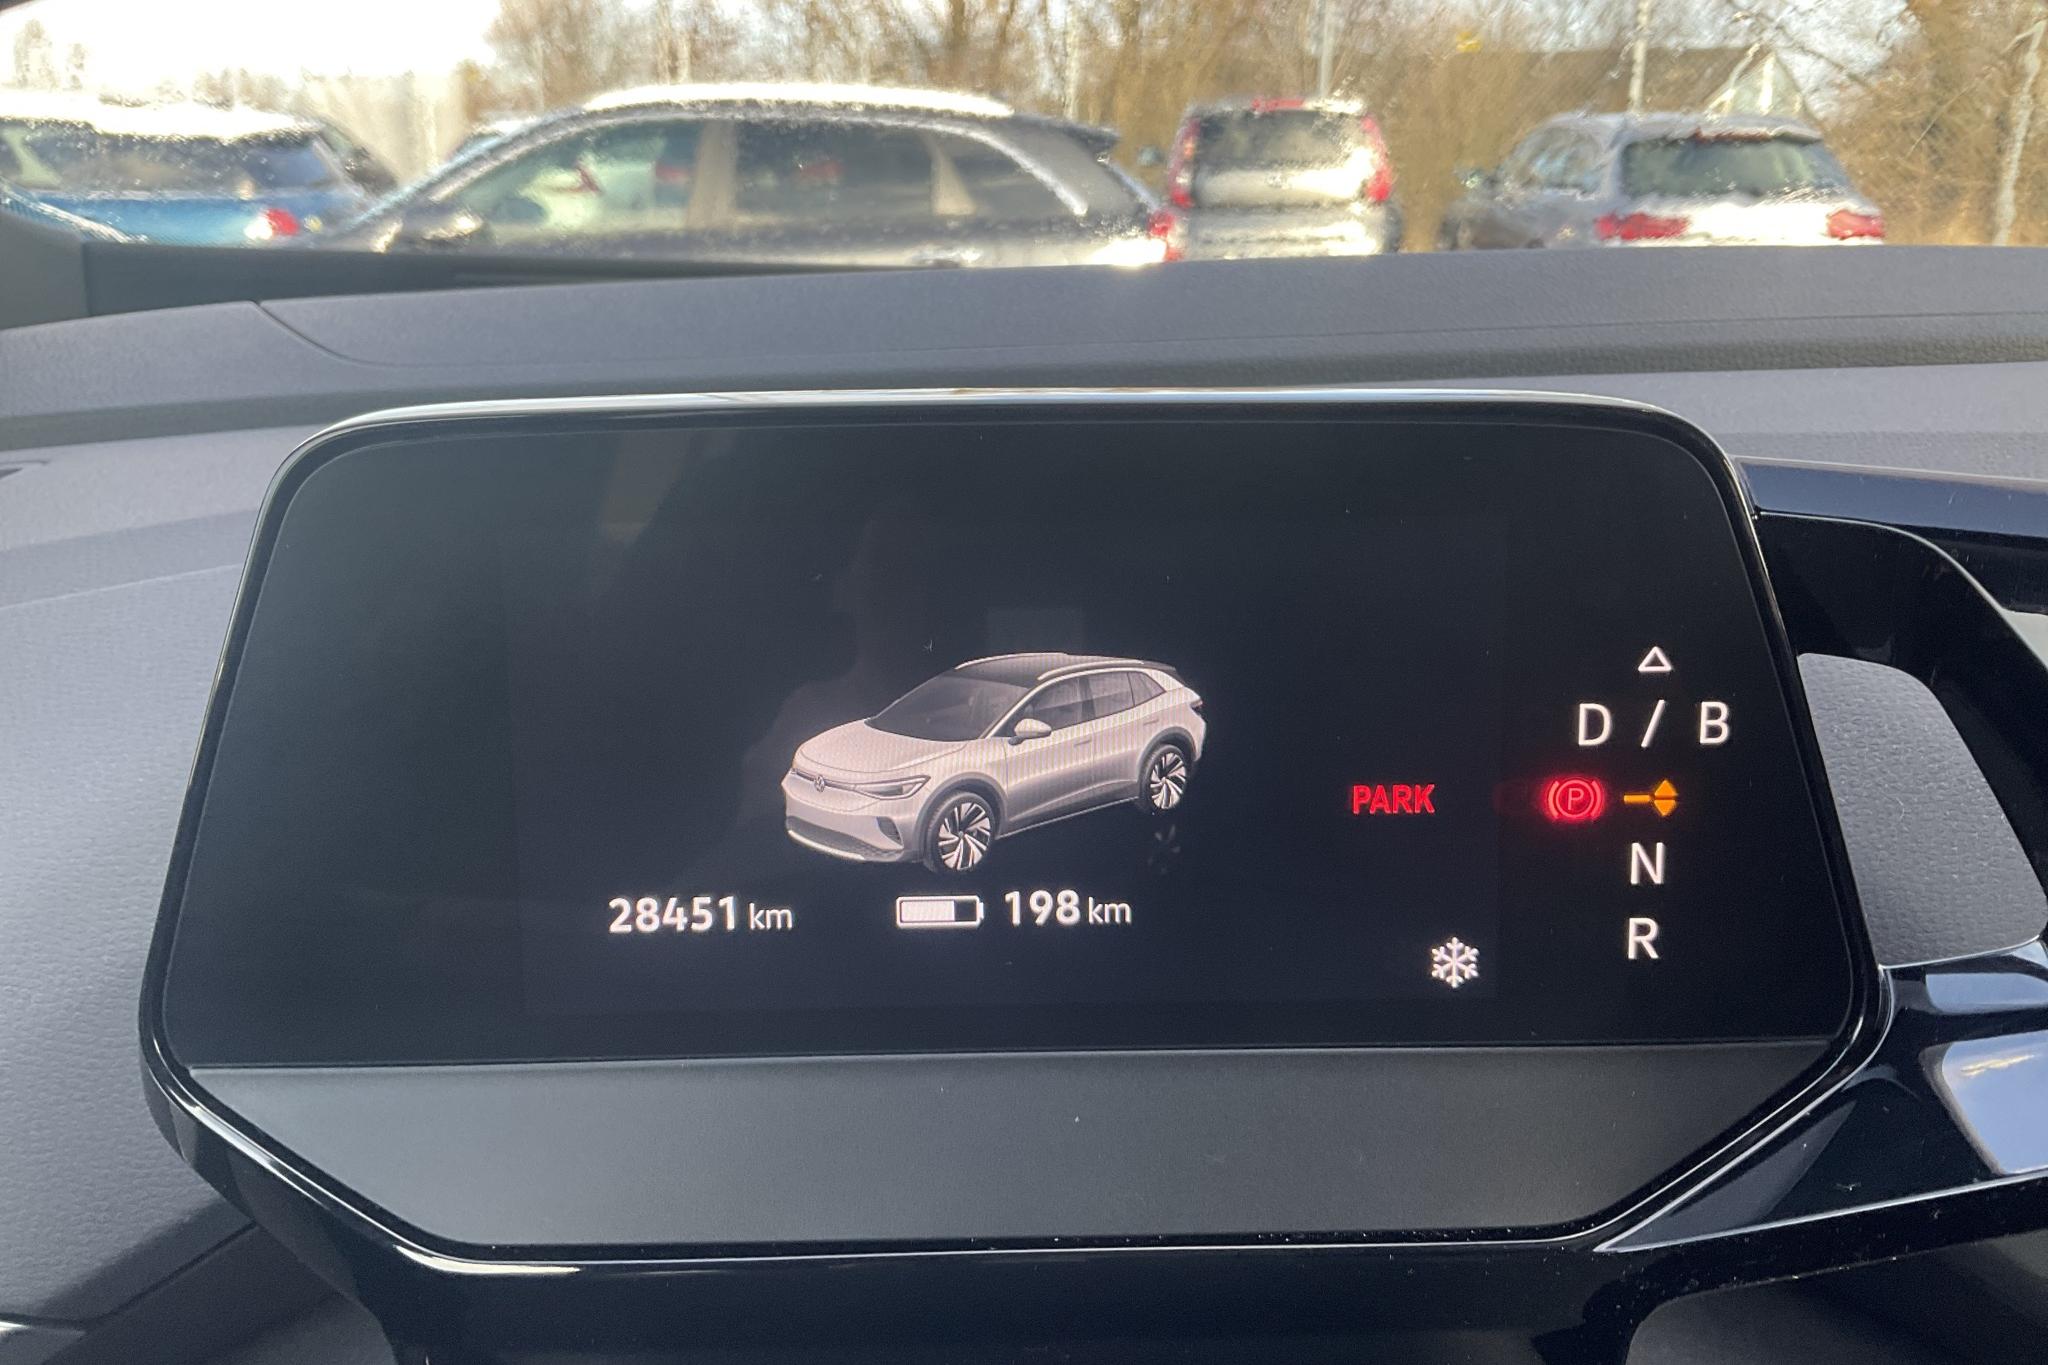 VW ID.4 77kWh (204hk) - 28 460 km - Automatic - yellow - 2021